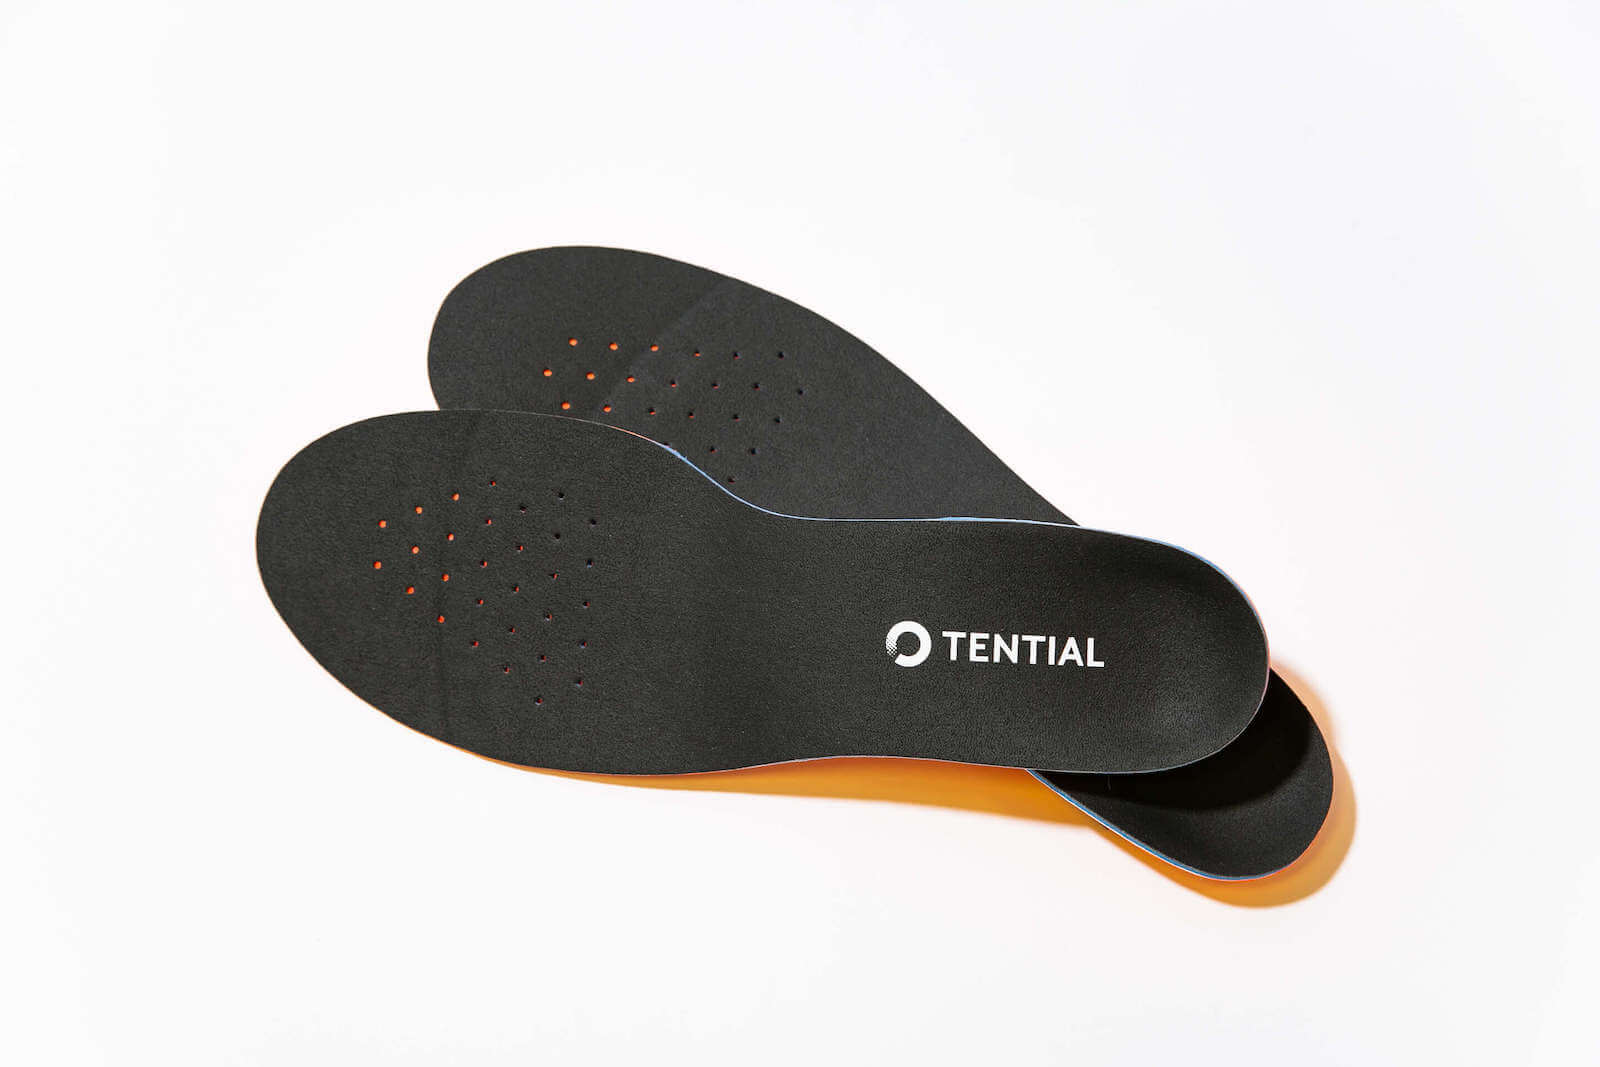 足底筋膜炎解消 予防グッズを紹介 プレゼントにもおすすめ Tential テンシャル 公式オンラインストア